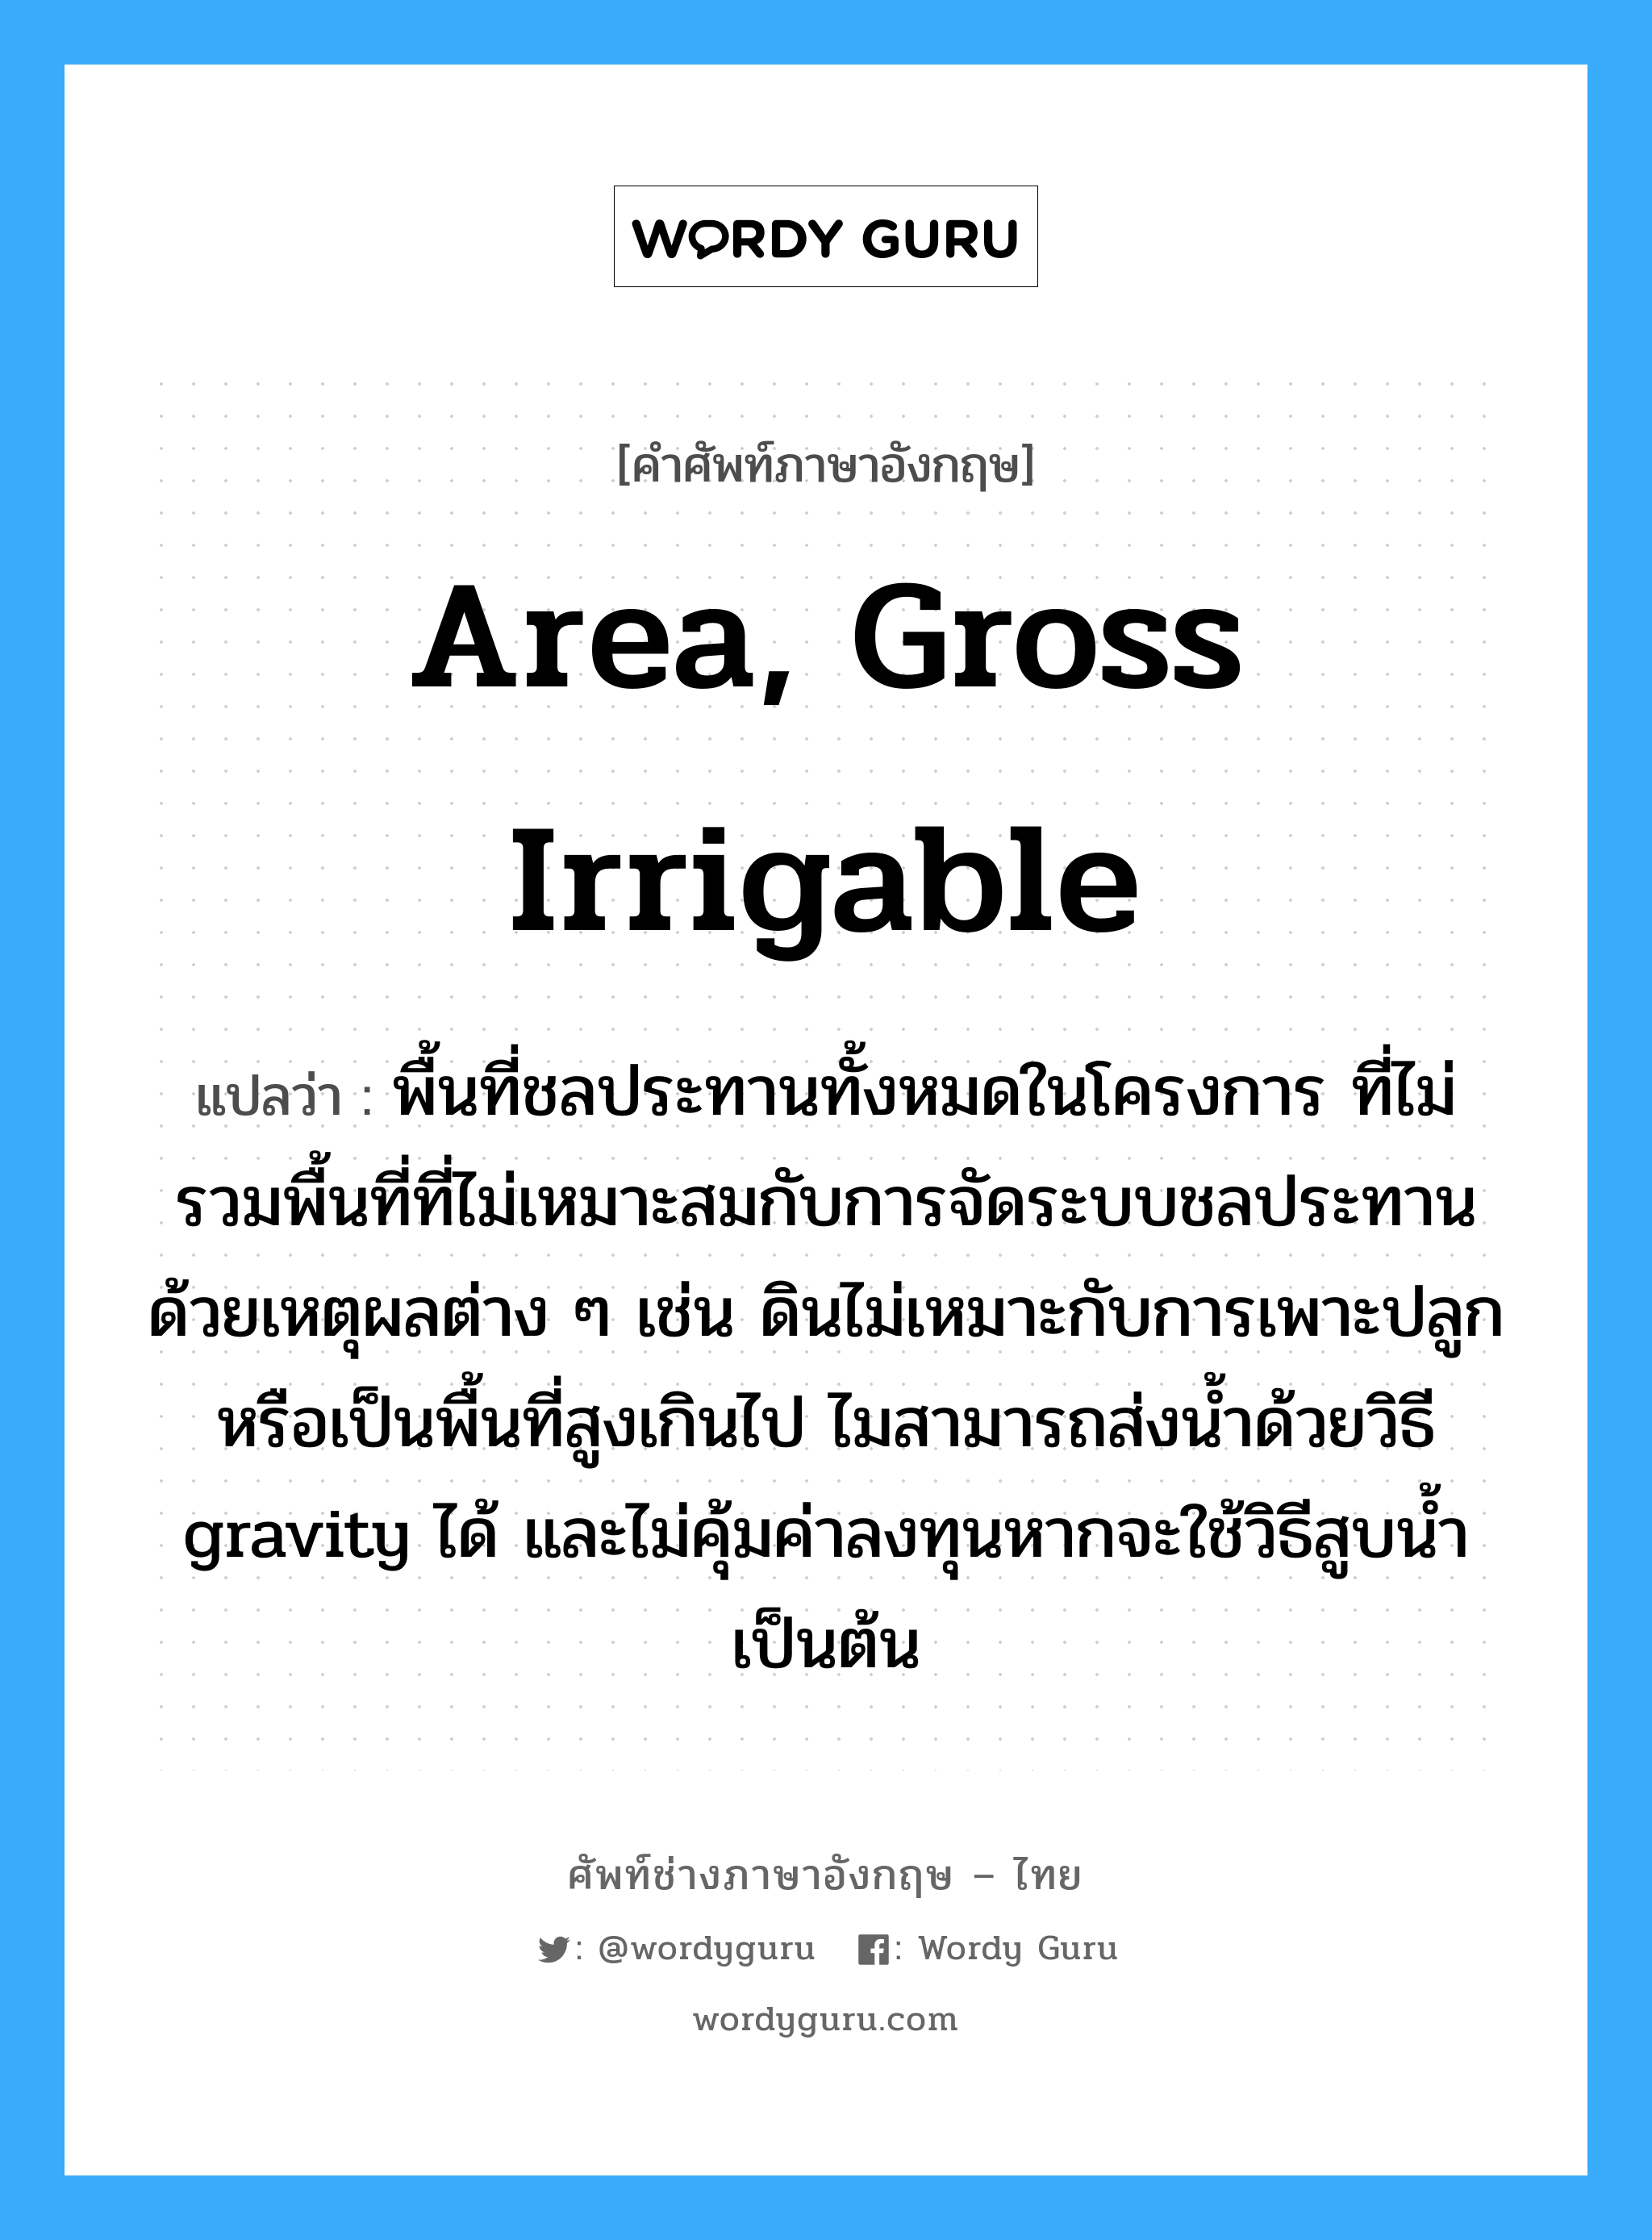 area, gross irrigable แปลว่า?, คำศัพท์ช่างภาษาอังกฤษ - ไทย area, gross irrigable คำศัพท์ภาษาอังกฤษ area, gross irrigable แปลว่า พื้นที่ชลประทานทั้งหมดในโครงการ ที่ไม่รวมพื้นที่ที่ไม่เหมาะสมกับการจัดระบบชลประทานด้วยเหตุผลต่าง ๆ เช่น ดินไม่เหมาะกับการเพาะปลูกหรือเป็นพื้นที่สูงเกินไป ไมสามารถส่งน้ำด้วยวิธี gravity ได้ และไม่คุ้มค่าลงทุนหากจะใช้วิธีสูบน้ำเป็นต้น